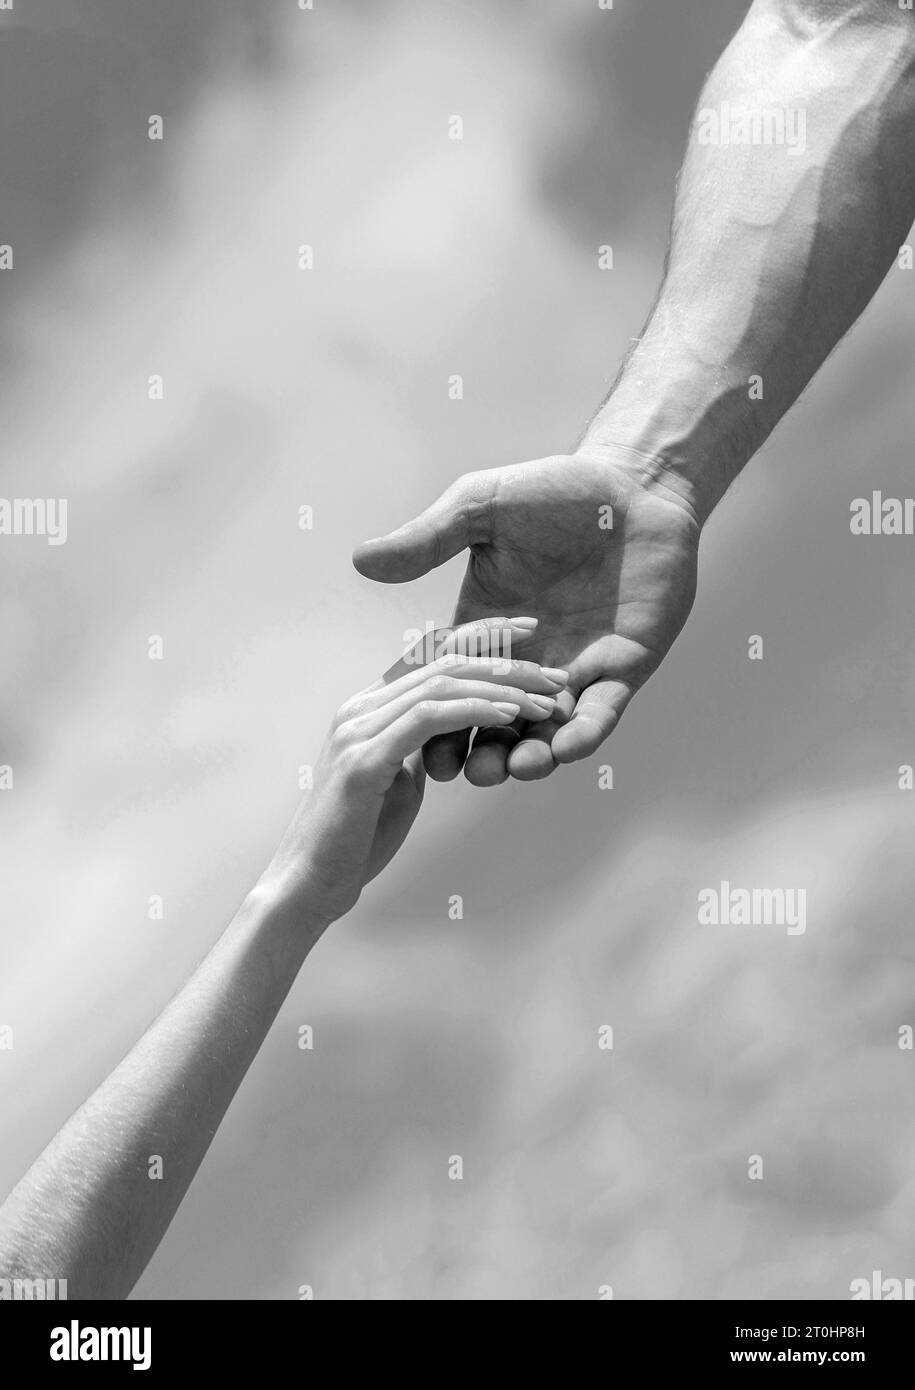 Eine helfende Hand geben. Hände von Mann und Frau auf blauem Himmel Hintergrund. Eine helfende Hand geben. Solidarität, Mitgefühl und Nächstenliebe, Rettung Stockfoto